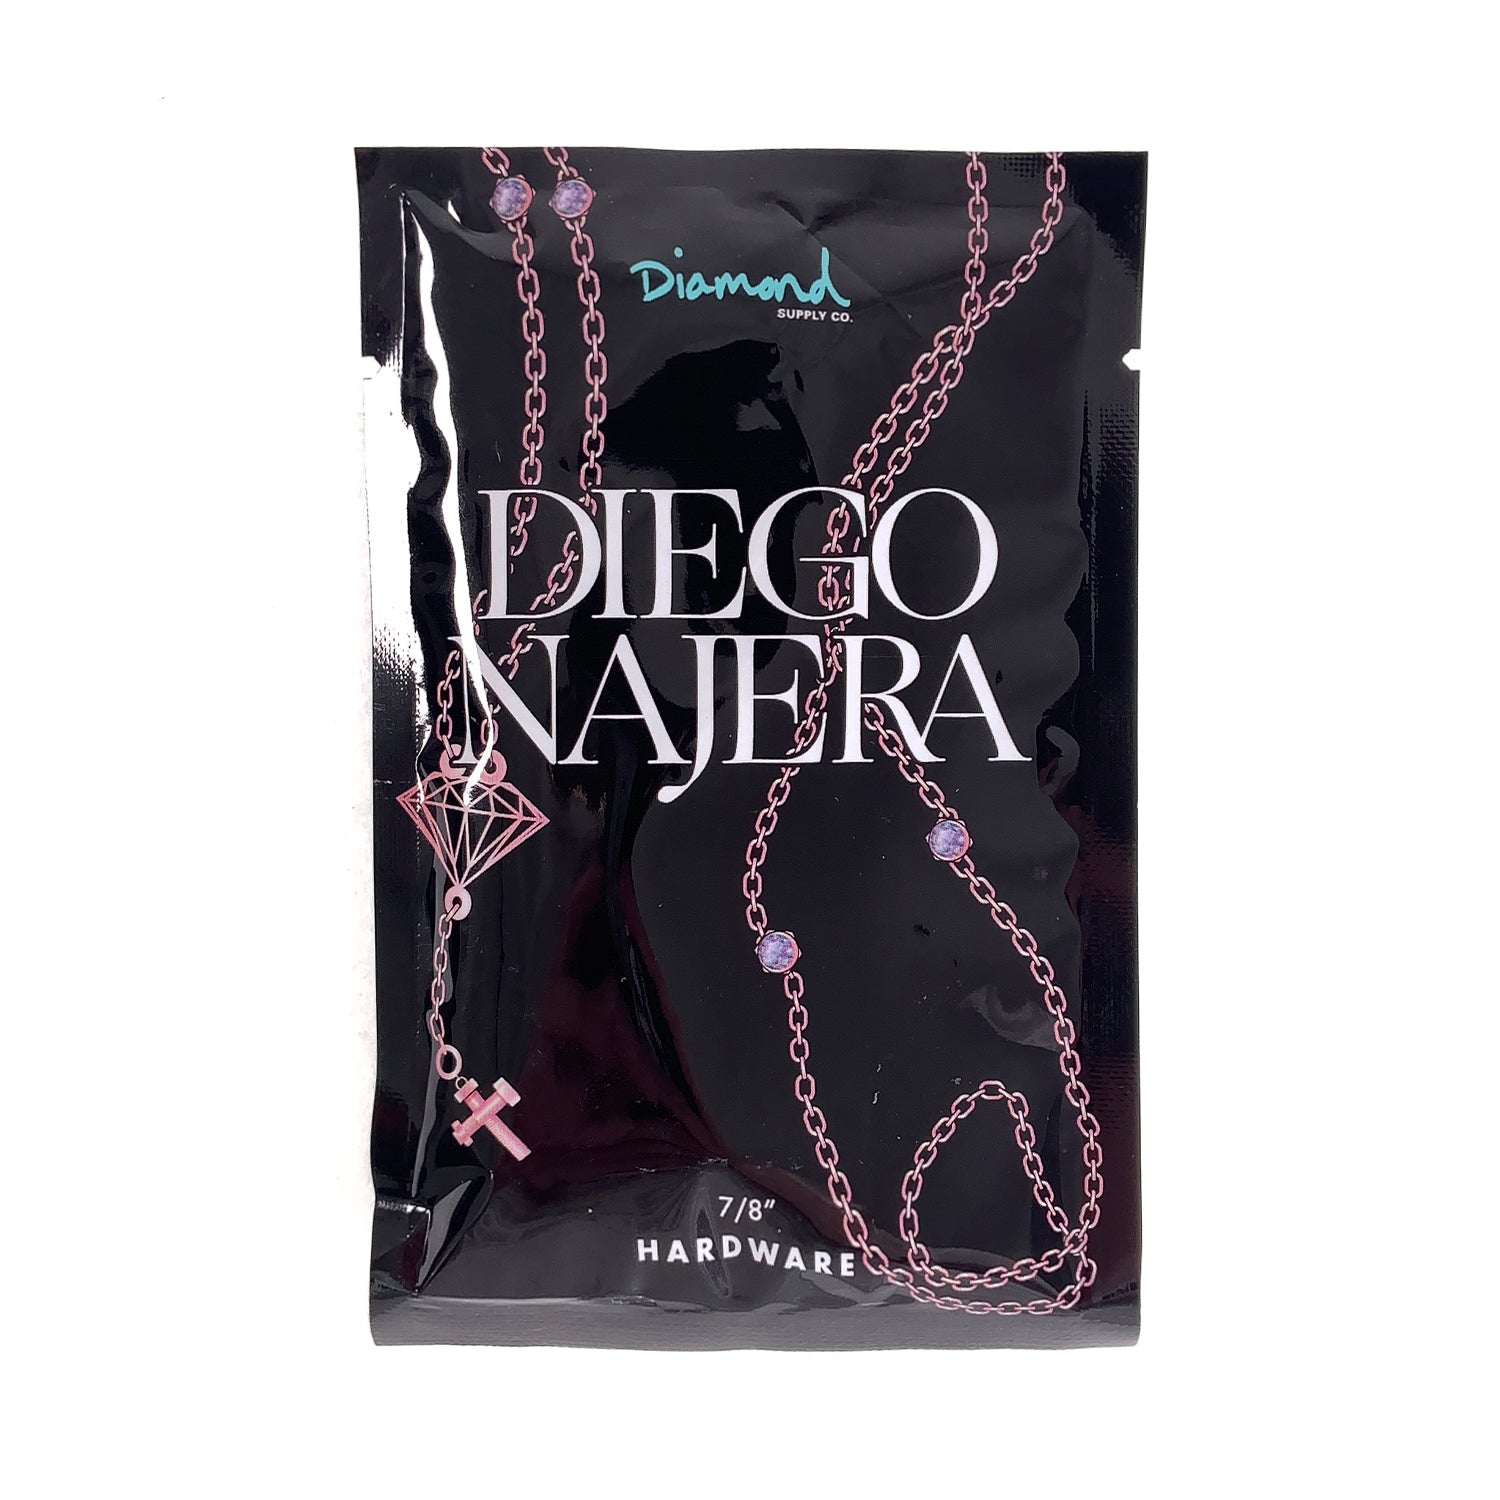 Diamond Supply Co. Diego Najera Pro Bolts 7/8" - Prime Delux Store